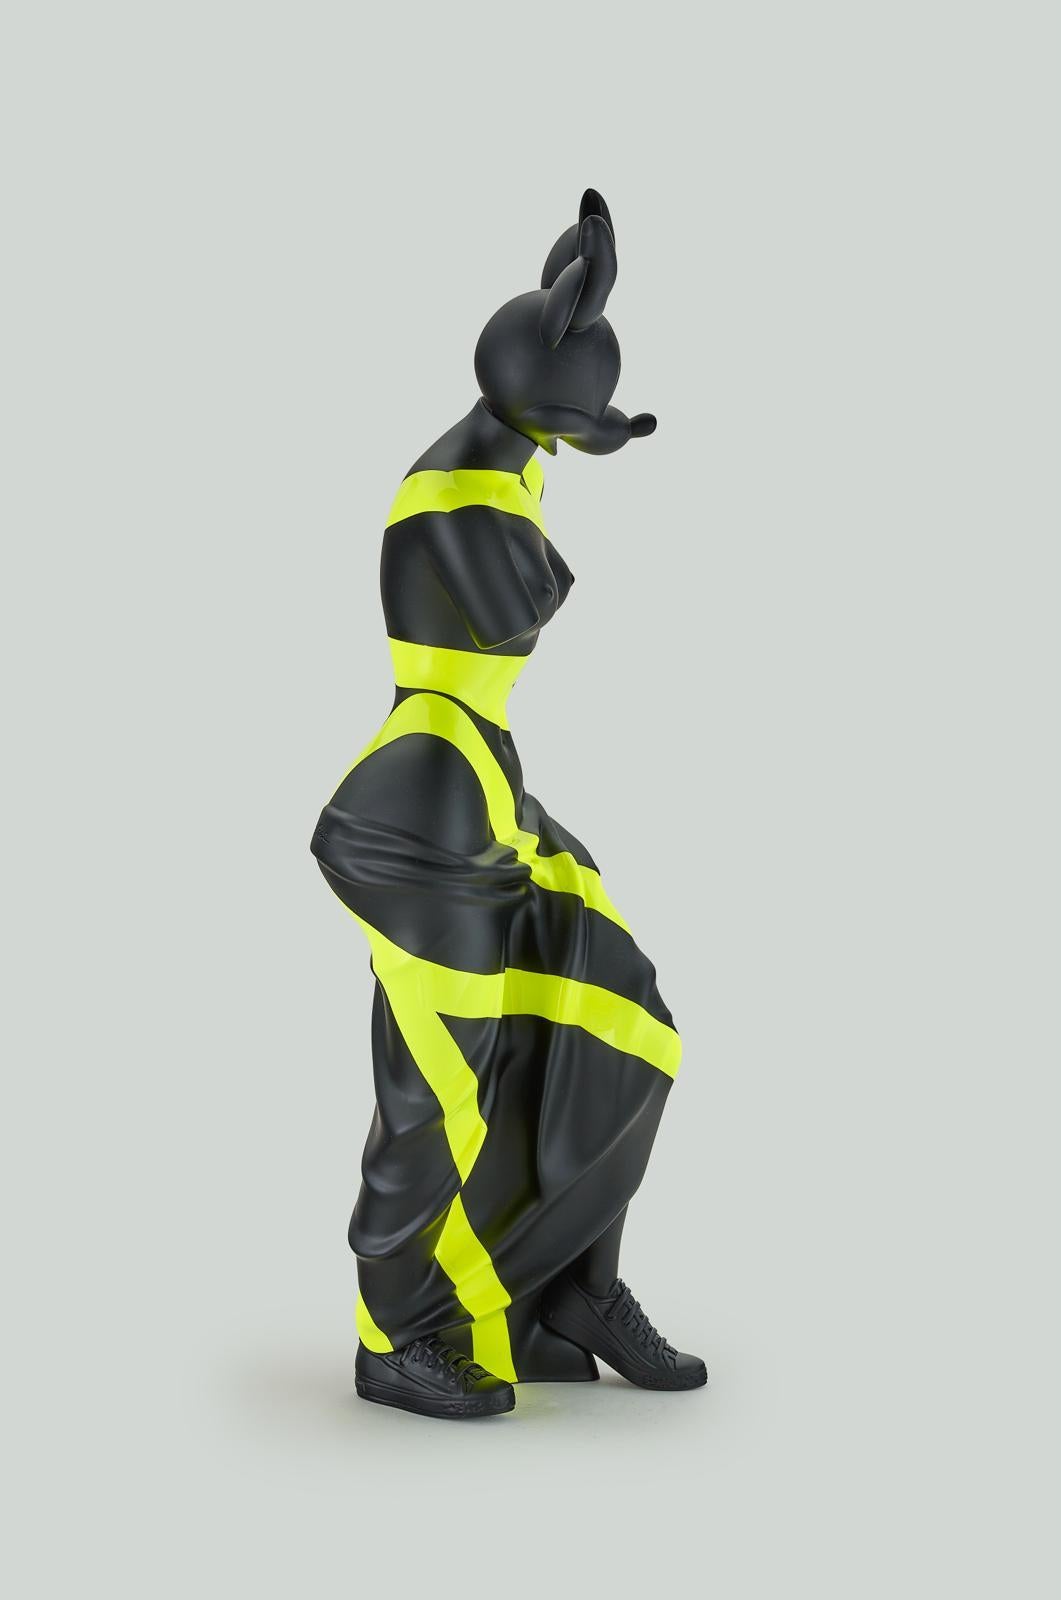 ANNA KARA - Black & yellow Minnie - Sculpture by Anna Kara